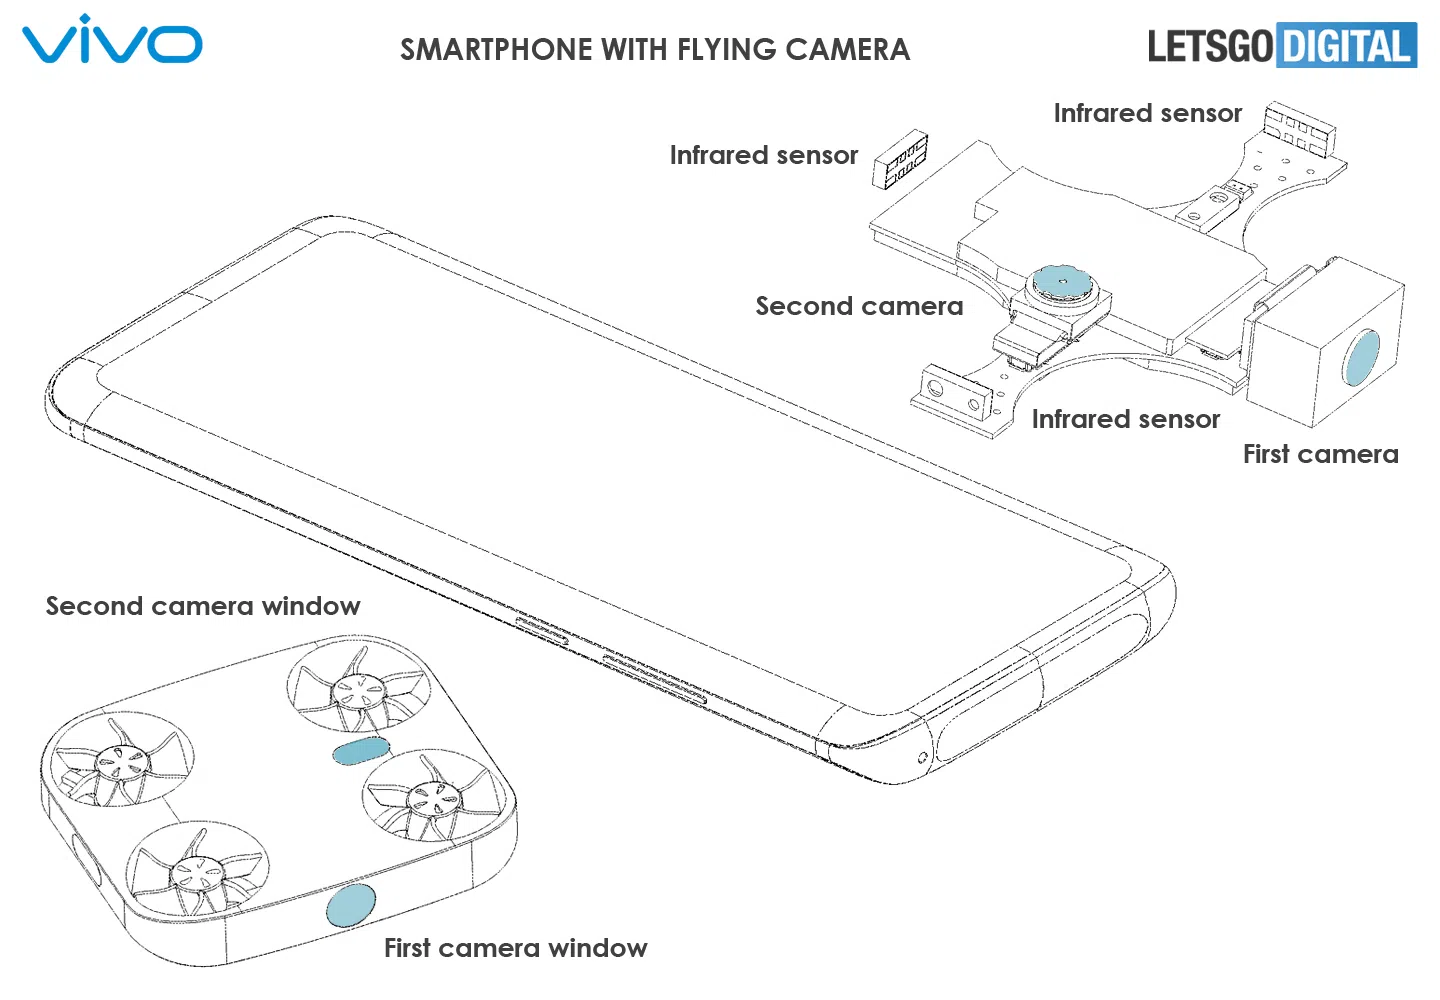 Desain ponsel dengan kamera terbang yang dipatenkan Vivo